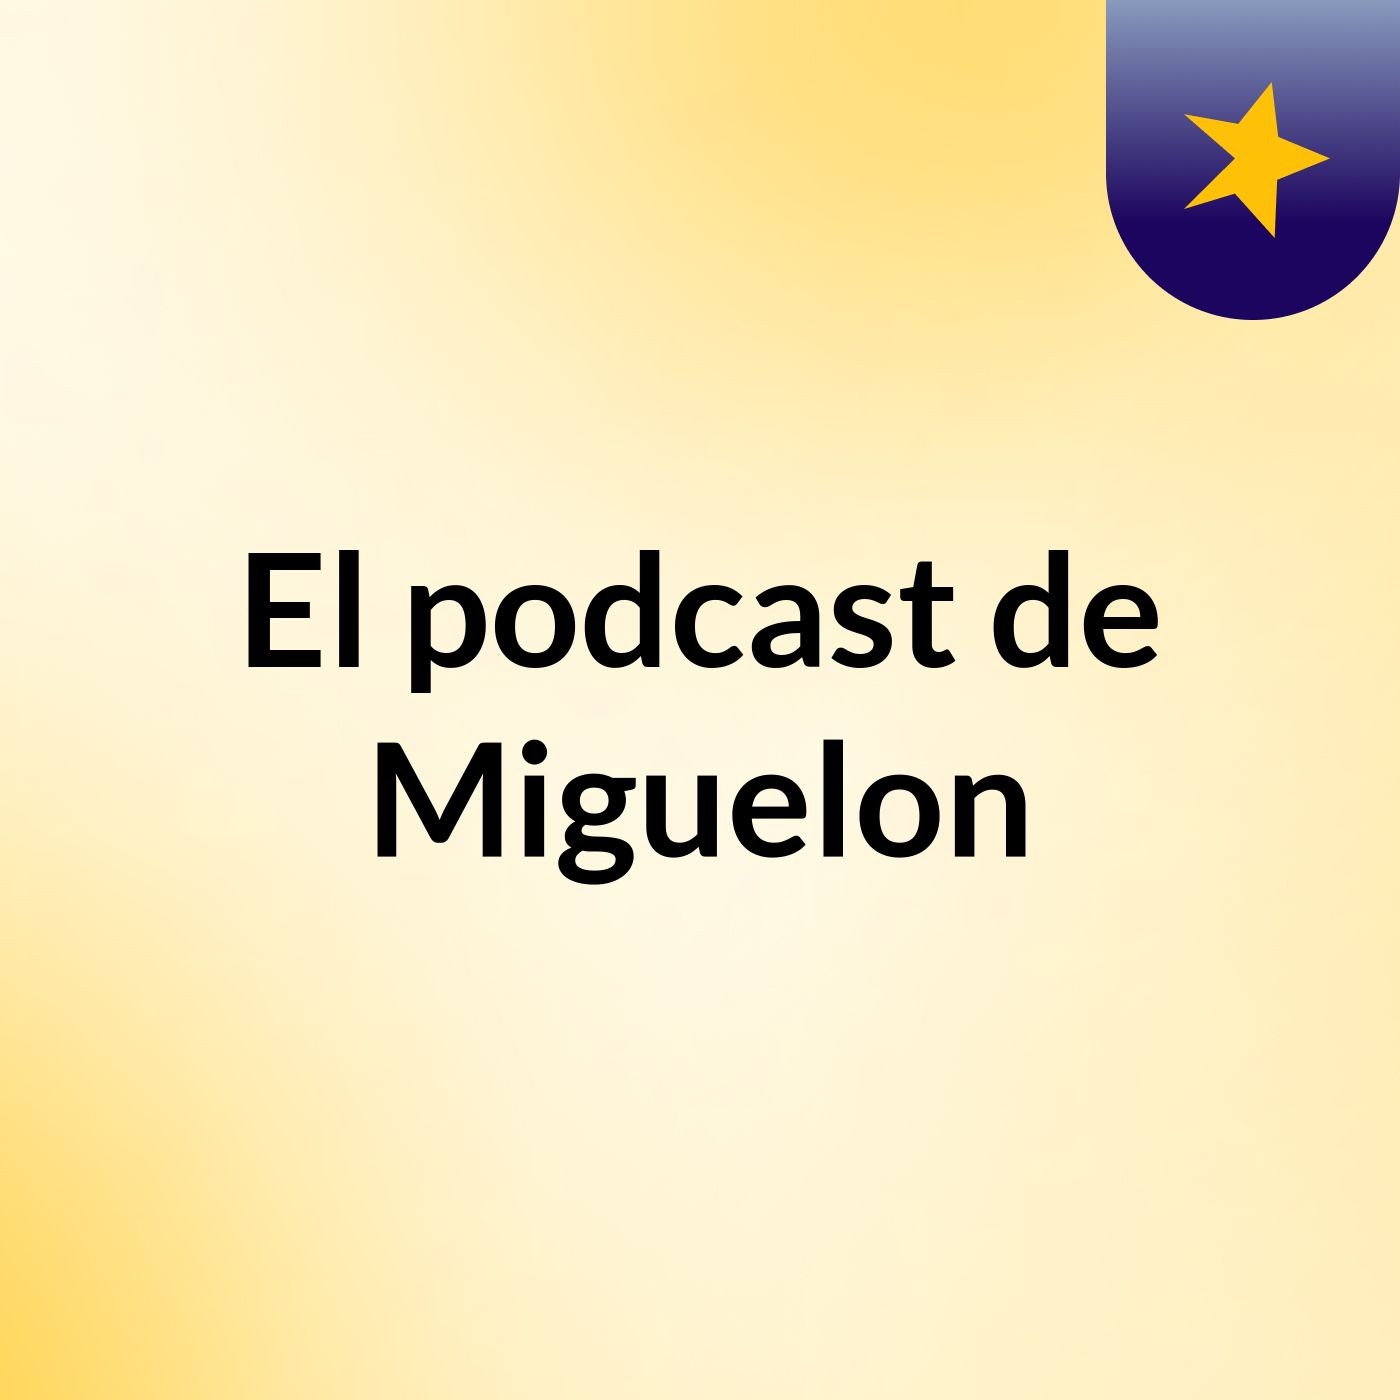 El podcast de Miguelon